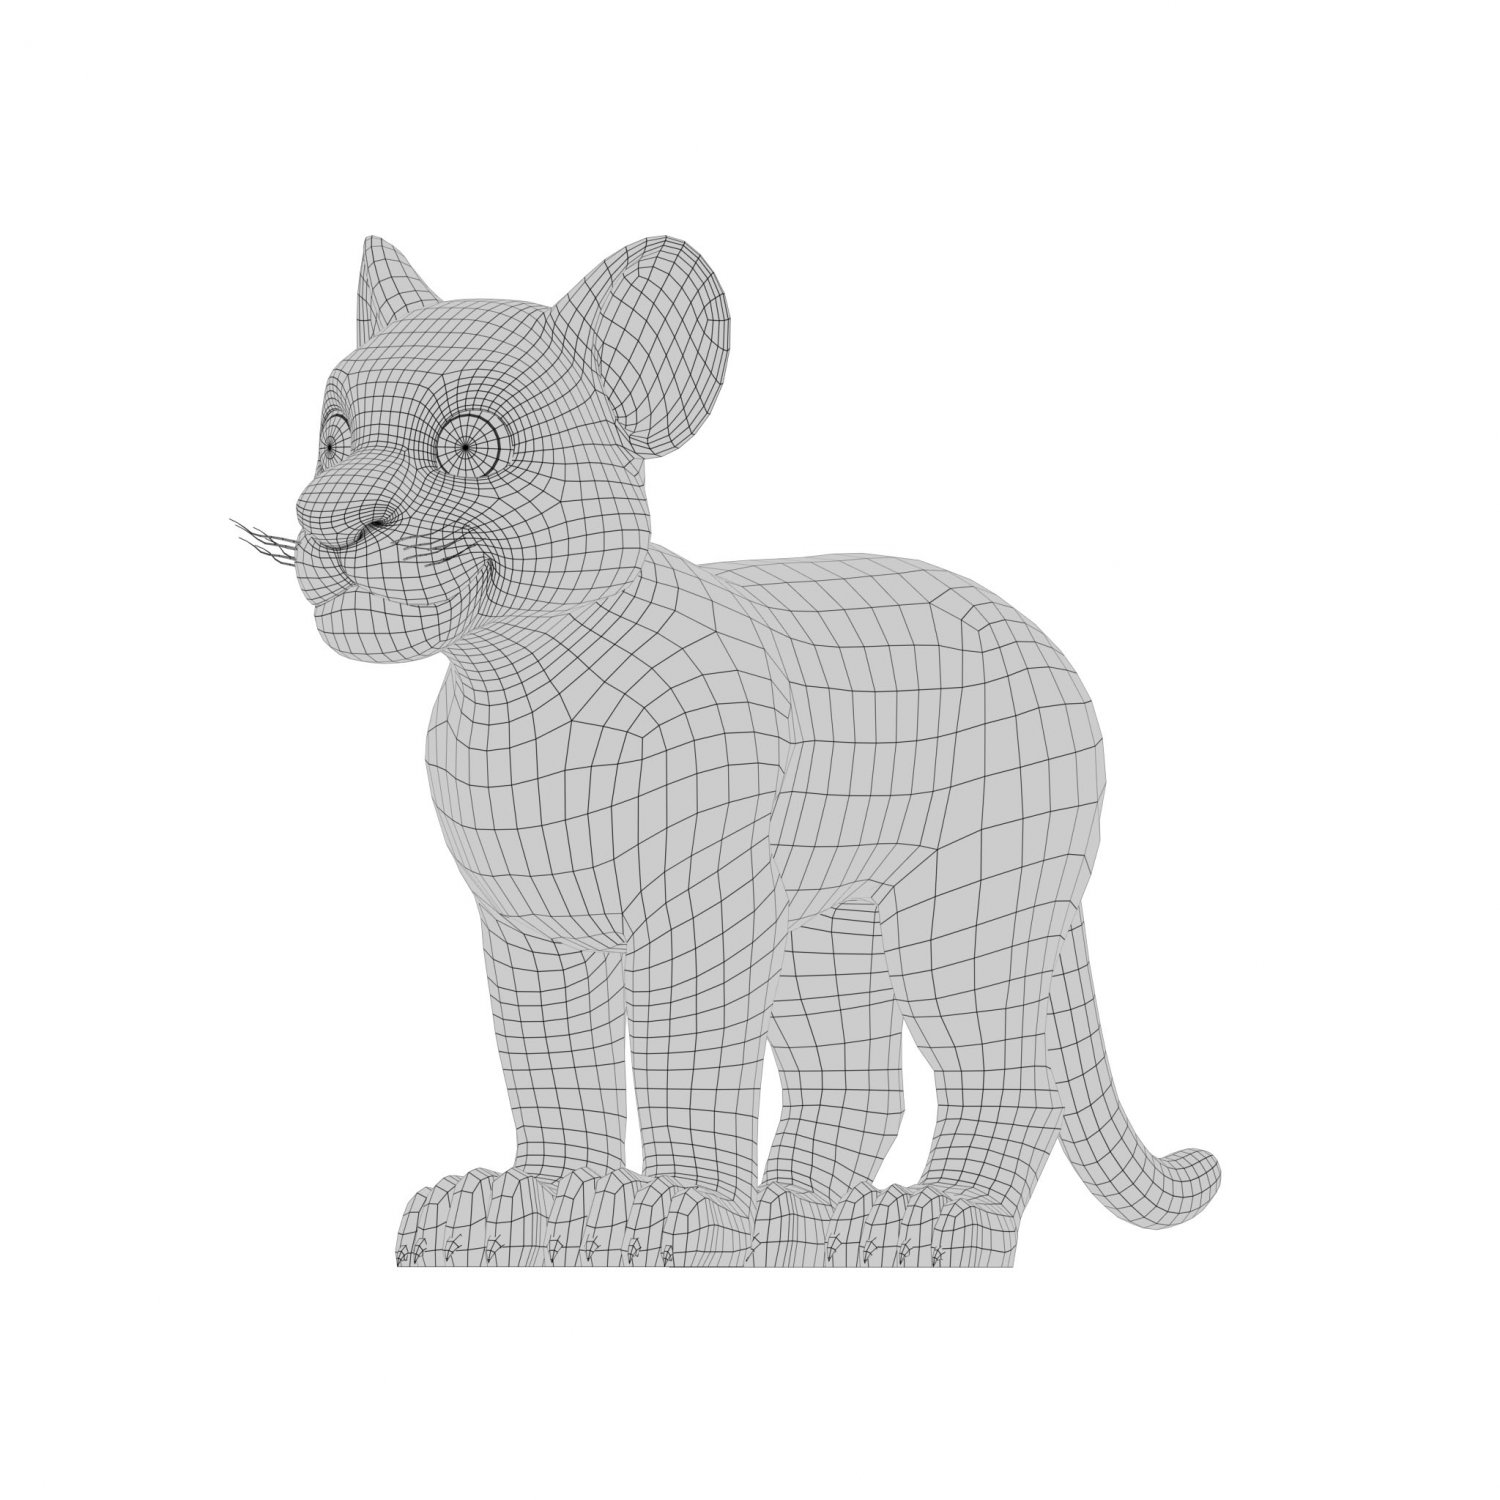 Animado Tigre 3D model - Baixar Animais no